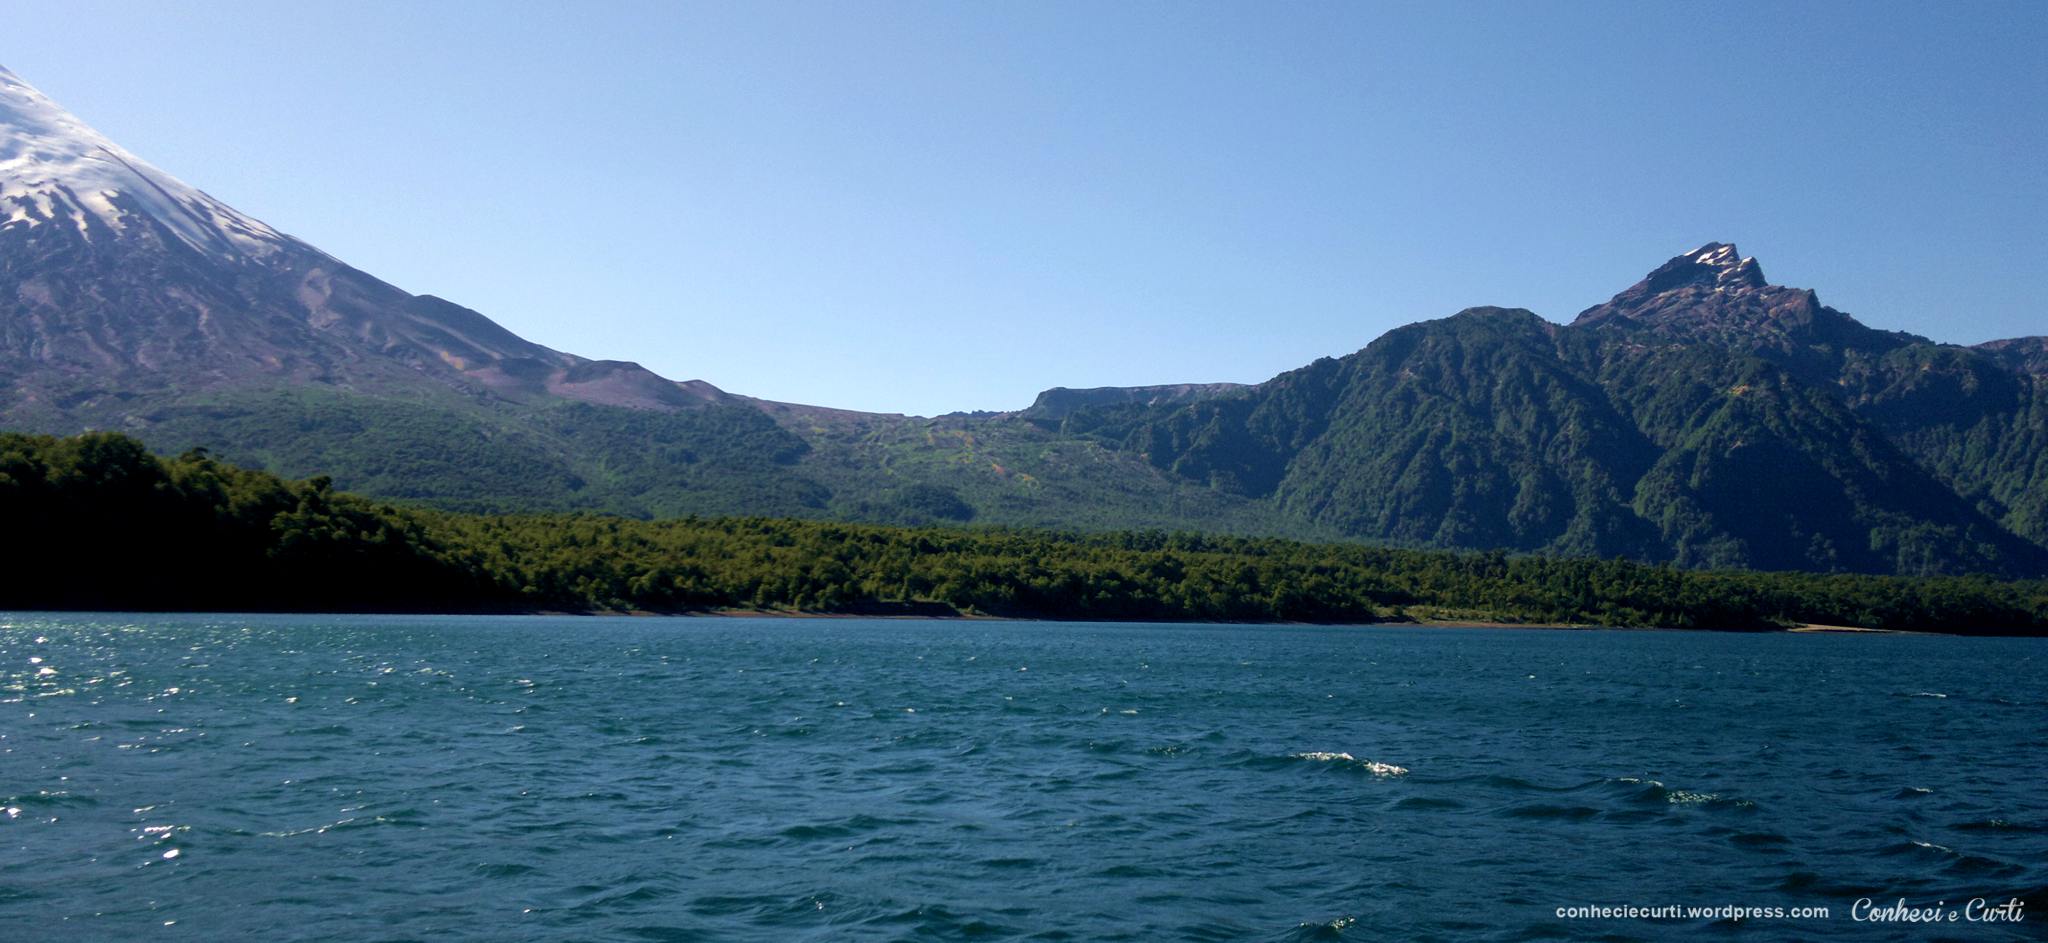 Lago de Todos os Santos, Chile